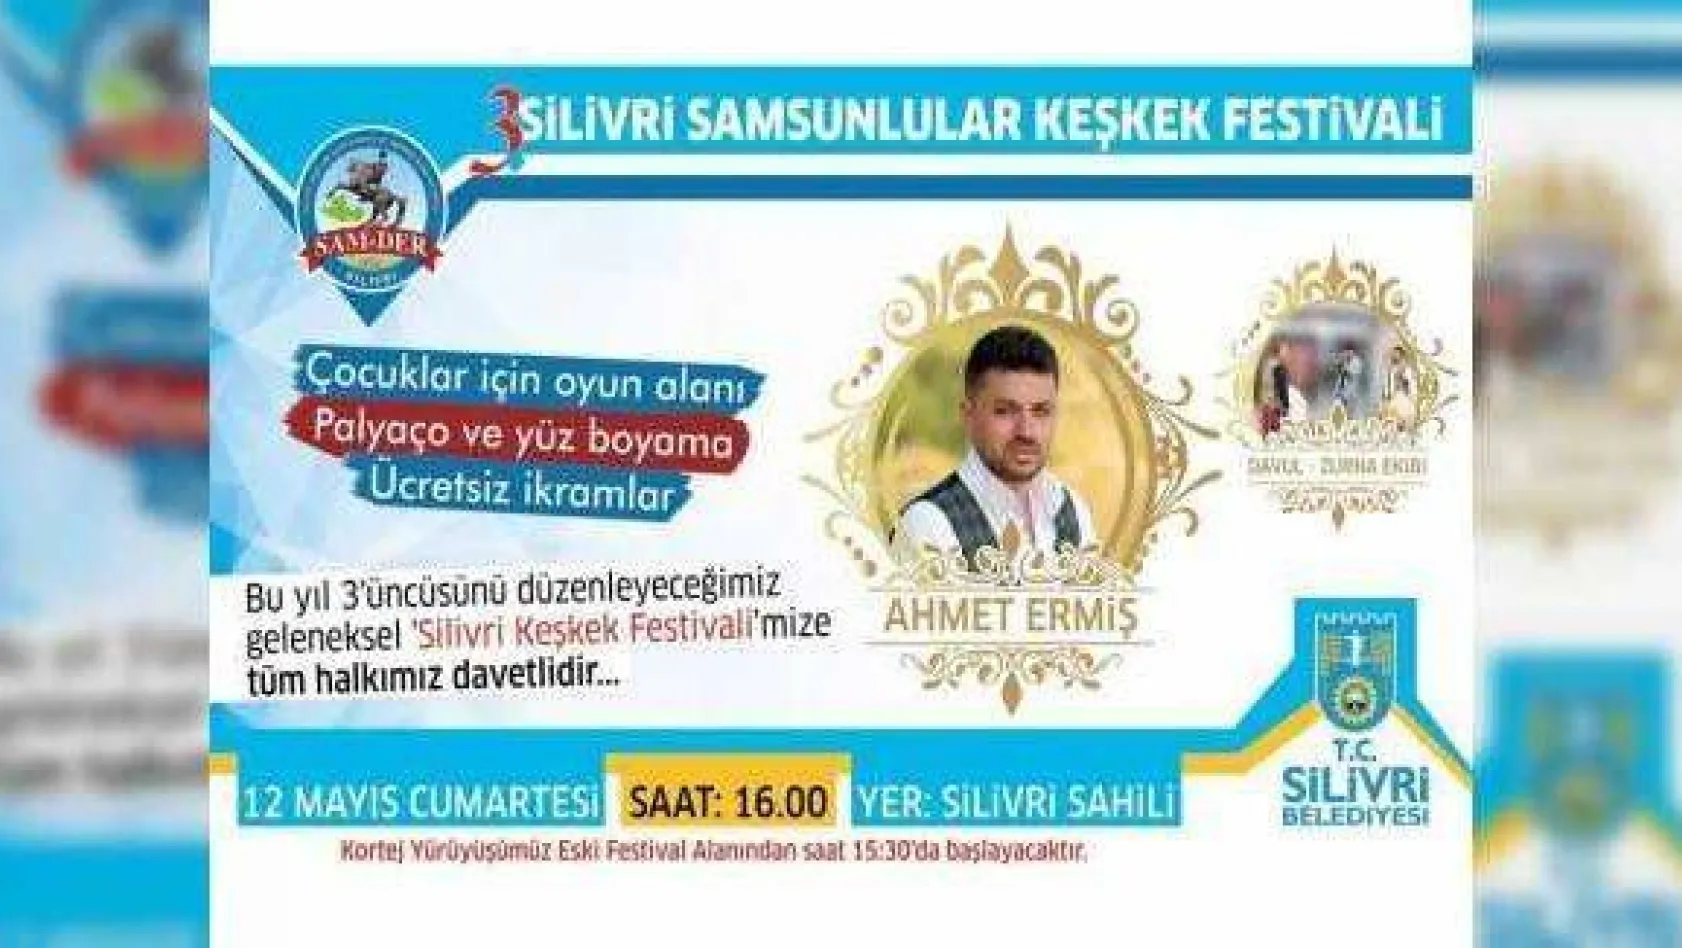 Samsunluların 'Keşkek Festivali' Başlıyor!